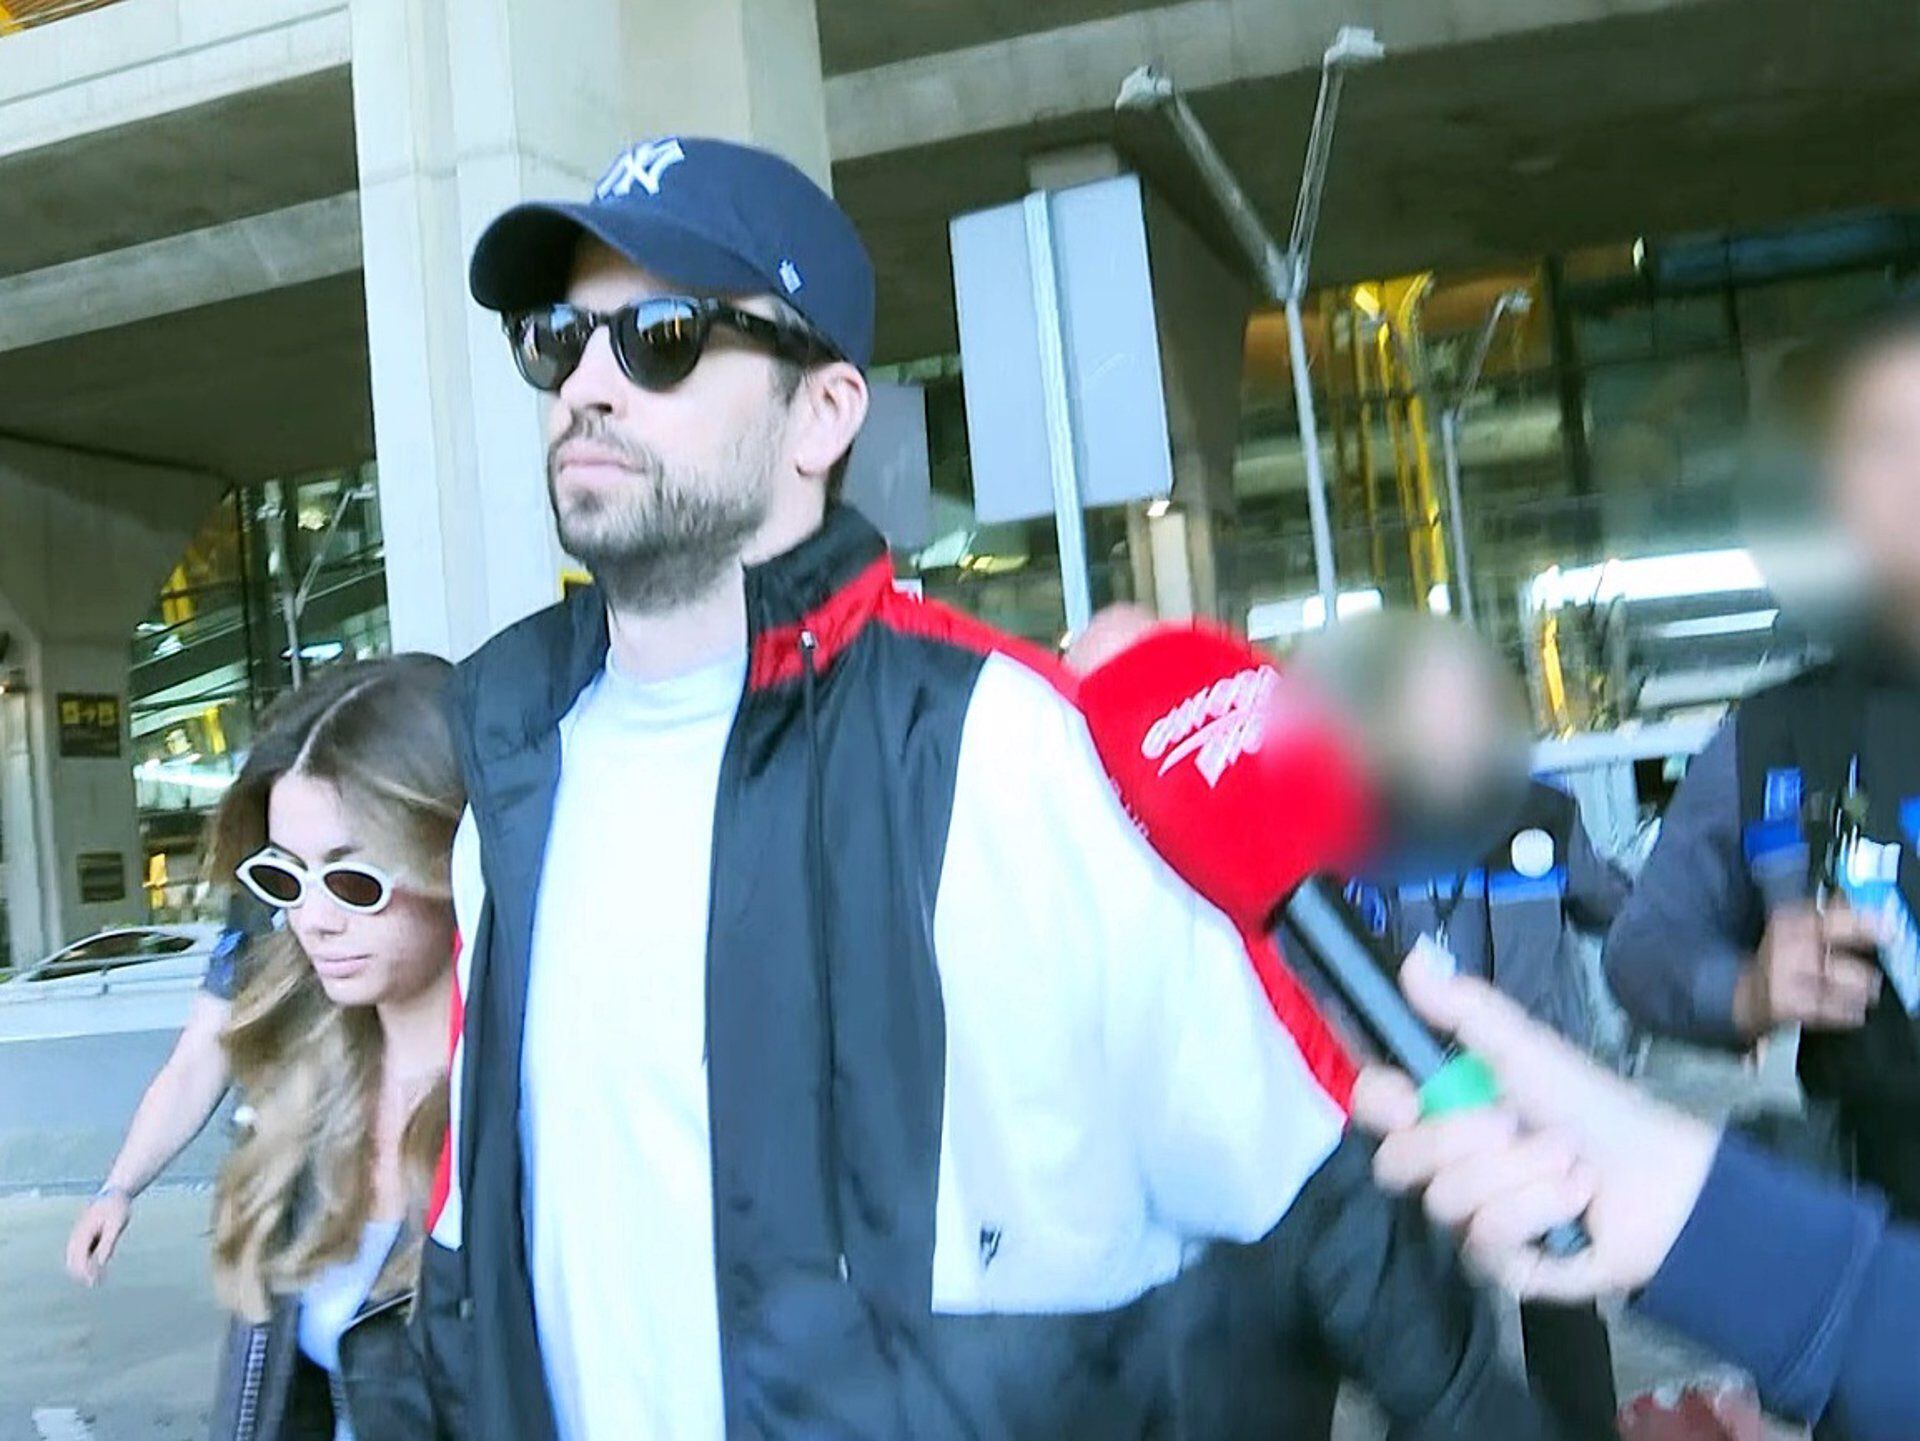 Gerard Piqué y Clara Chía se mostraron distantes de la prensa durante su paso por el aeropuerto de Madrid. La seguridad que les acompañaba tuvo un altercado con los reporteros gráficos en el lugar - crédito Europa Press